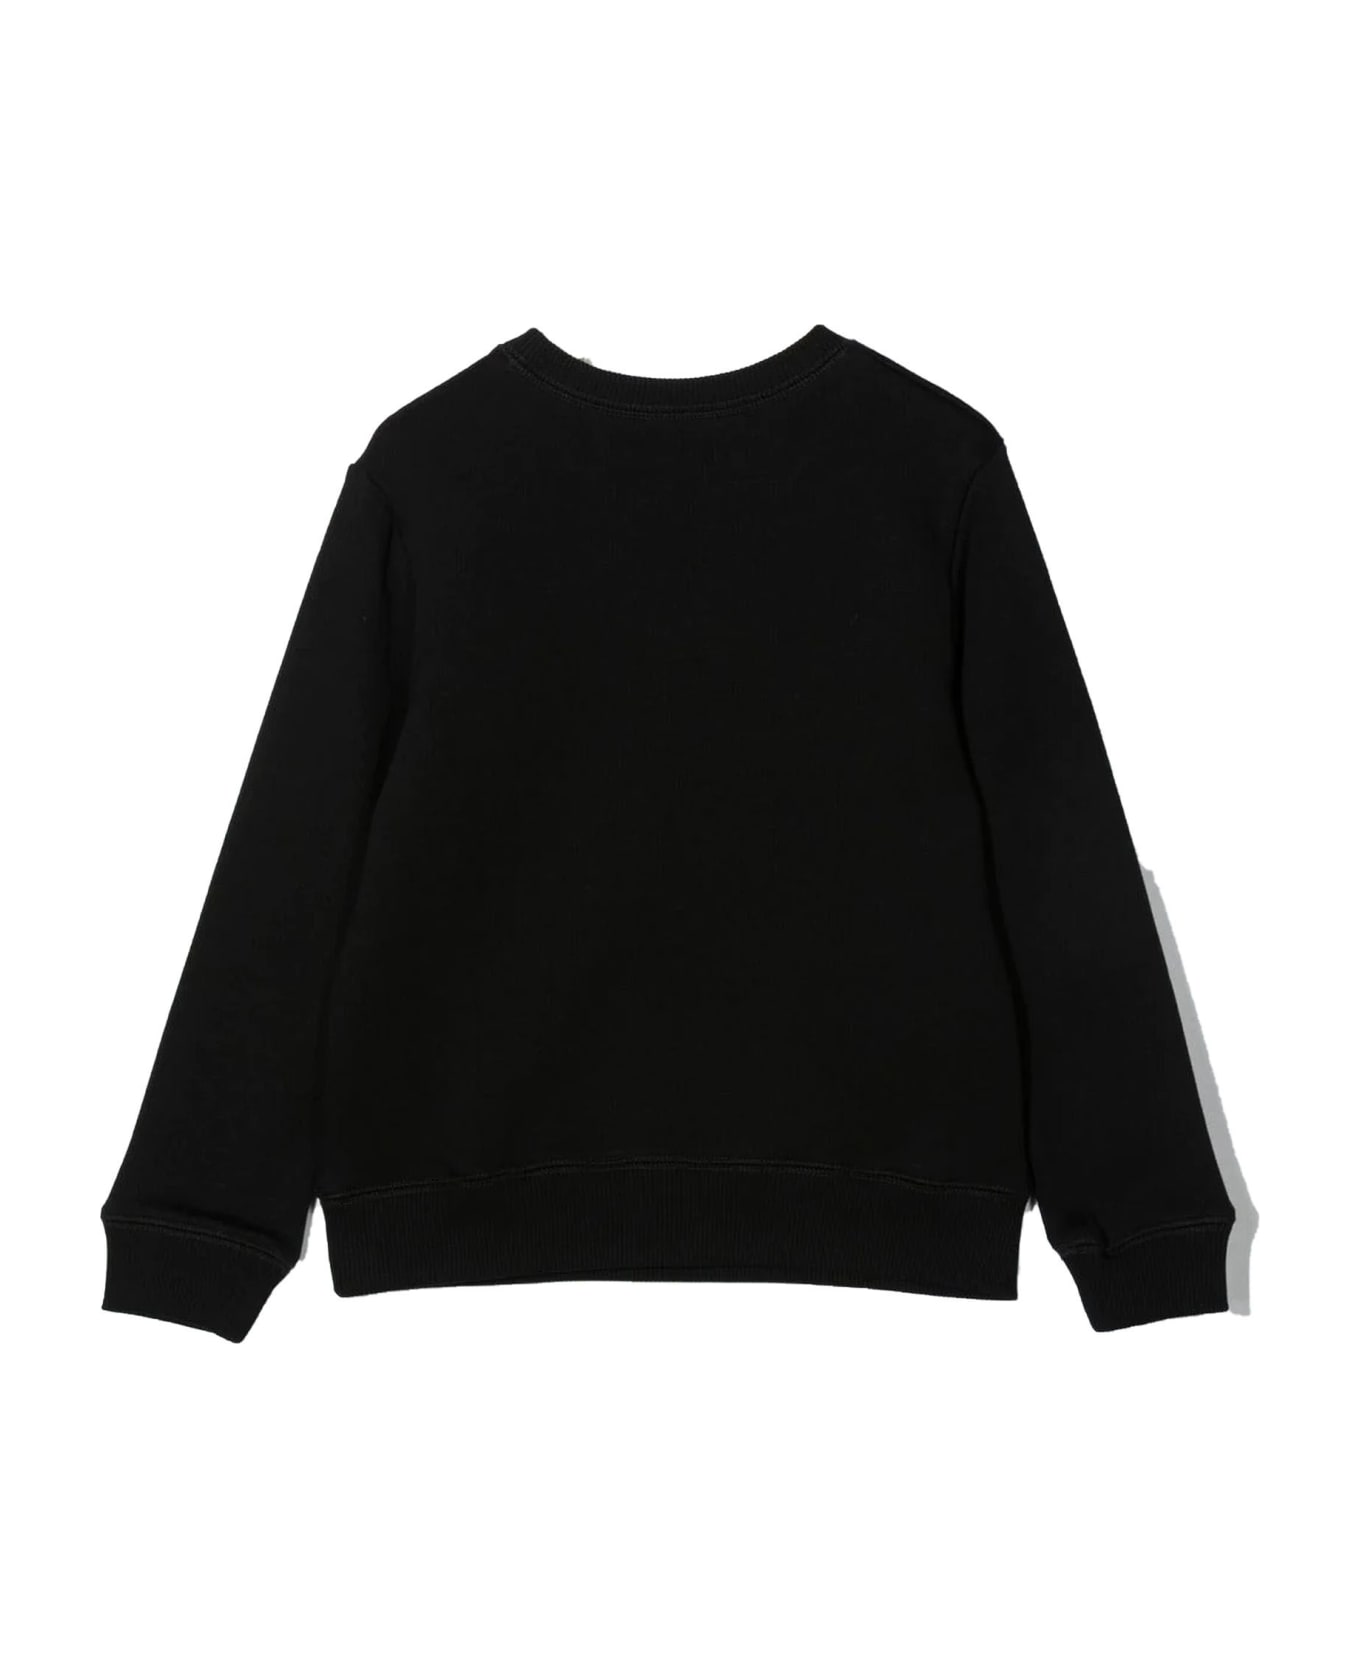 Lanvin Black Cotton Sweatshirt - Nero